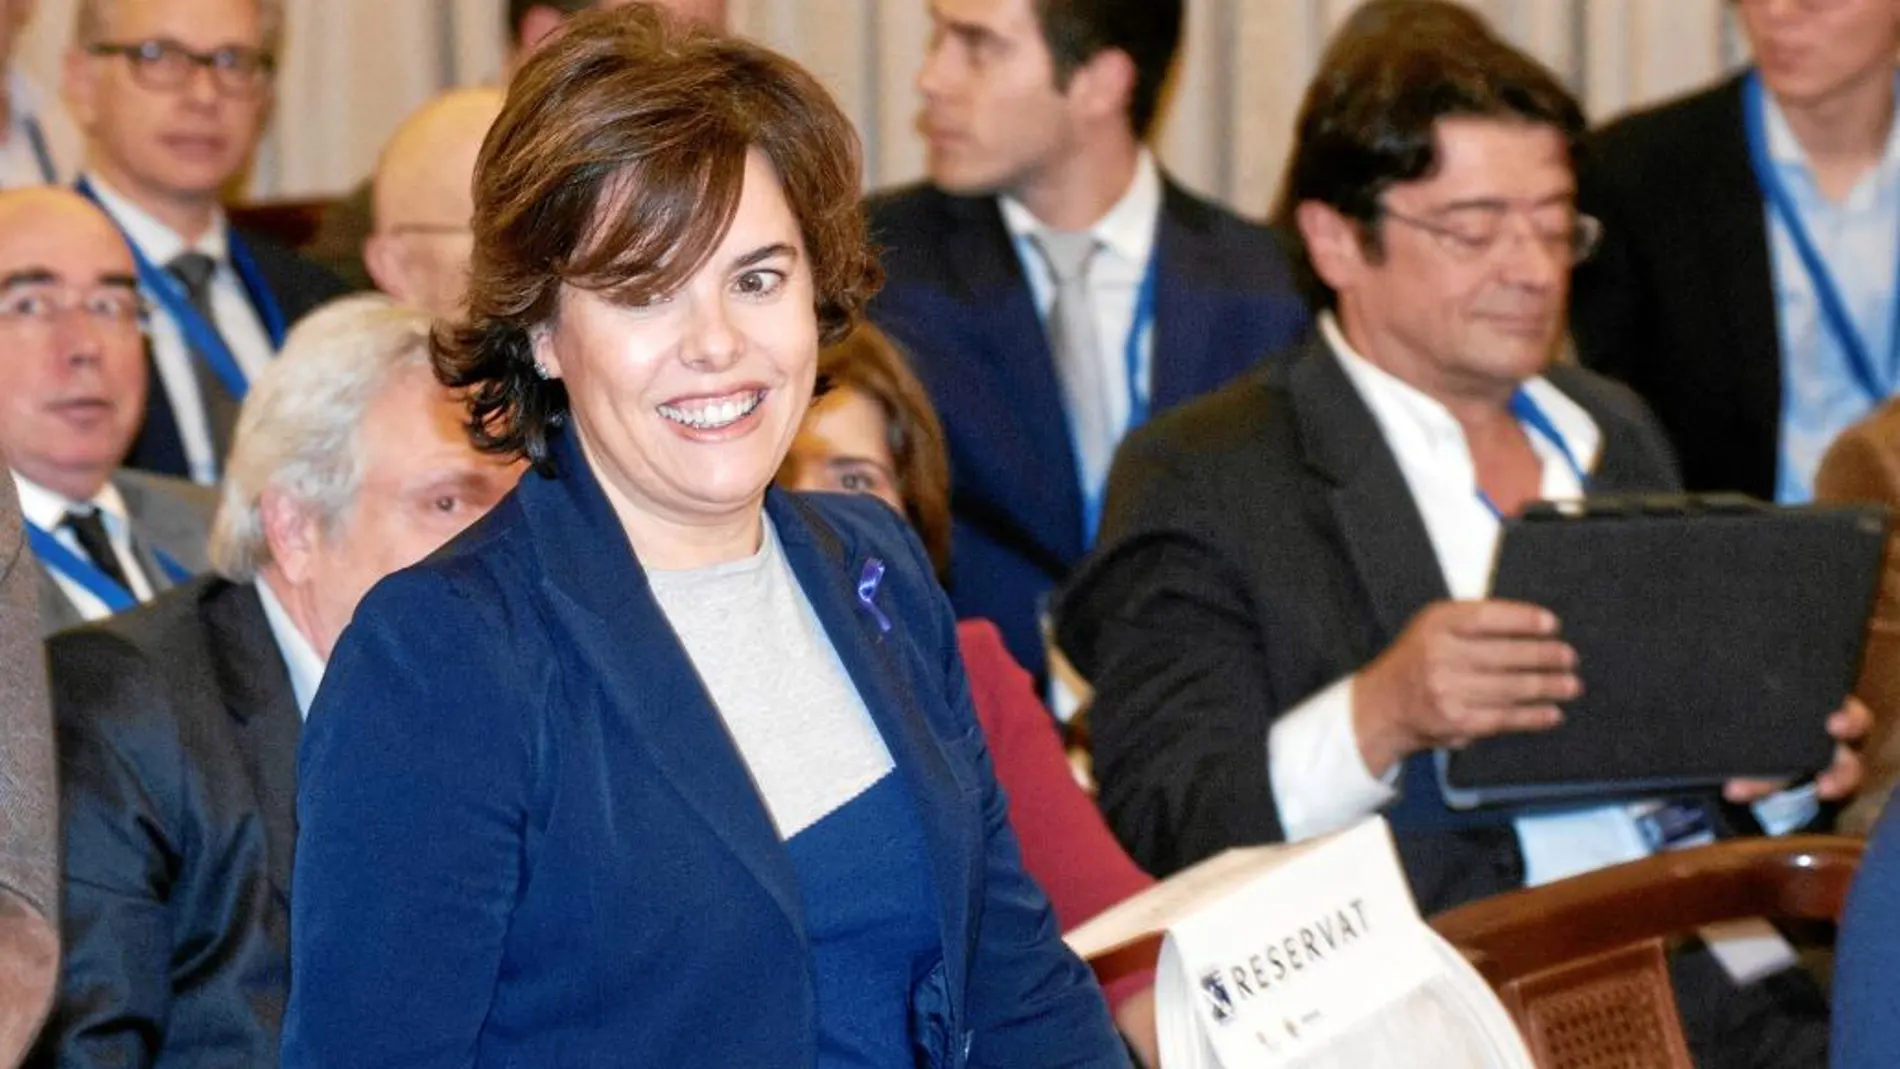 Soraya Sáenz de Santamaría participó ayer en el XXII Encuentro de Economía en S’Agaró y defendió que la aplicación del 155 «ha sido una muestra de respeto a todos los catalanes»